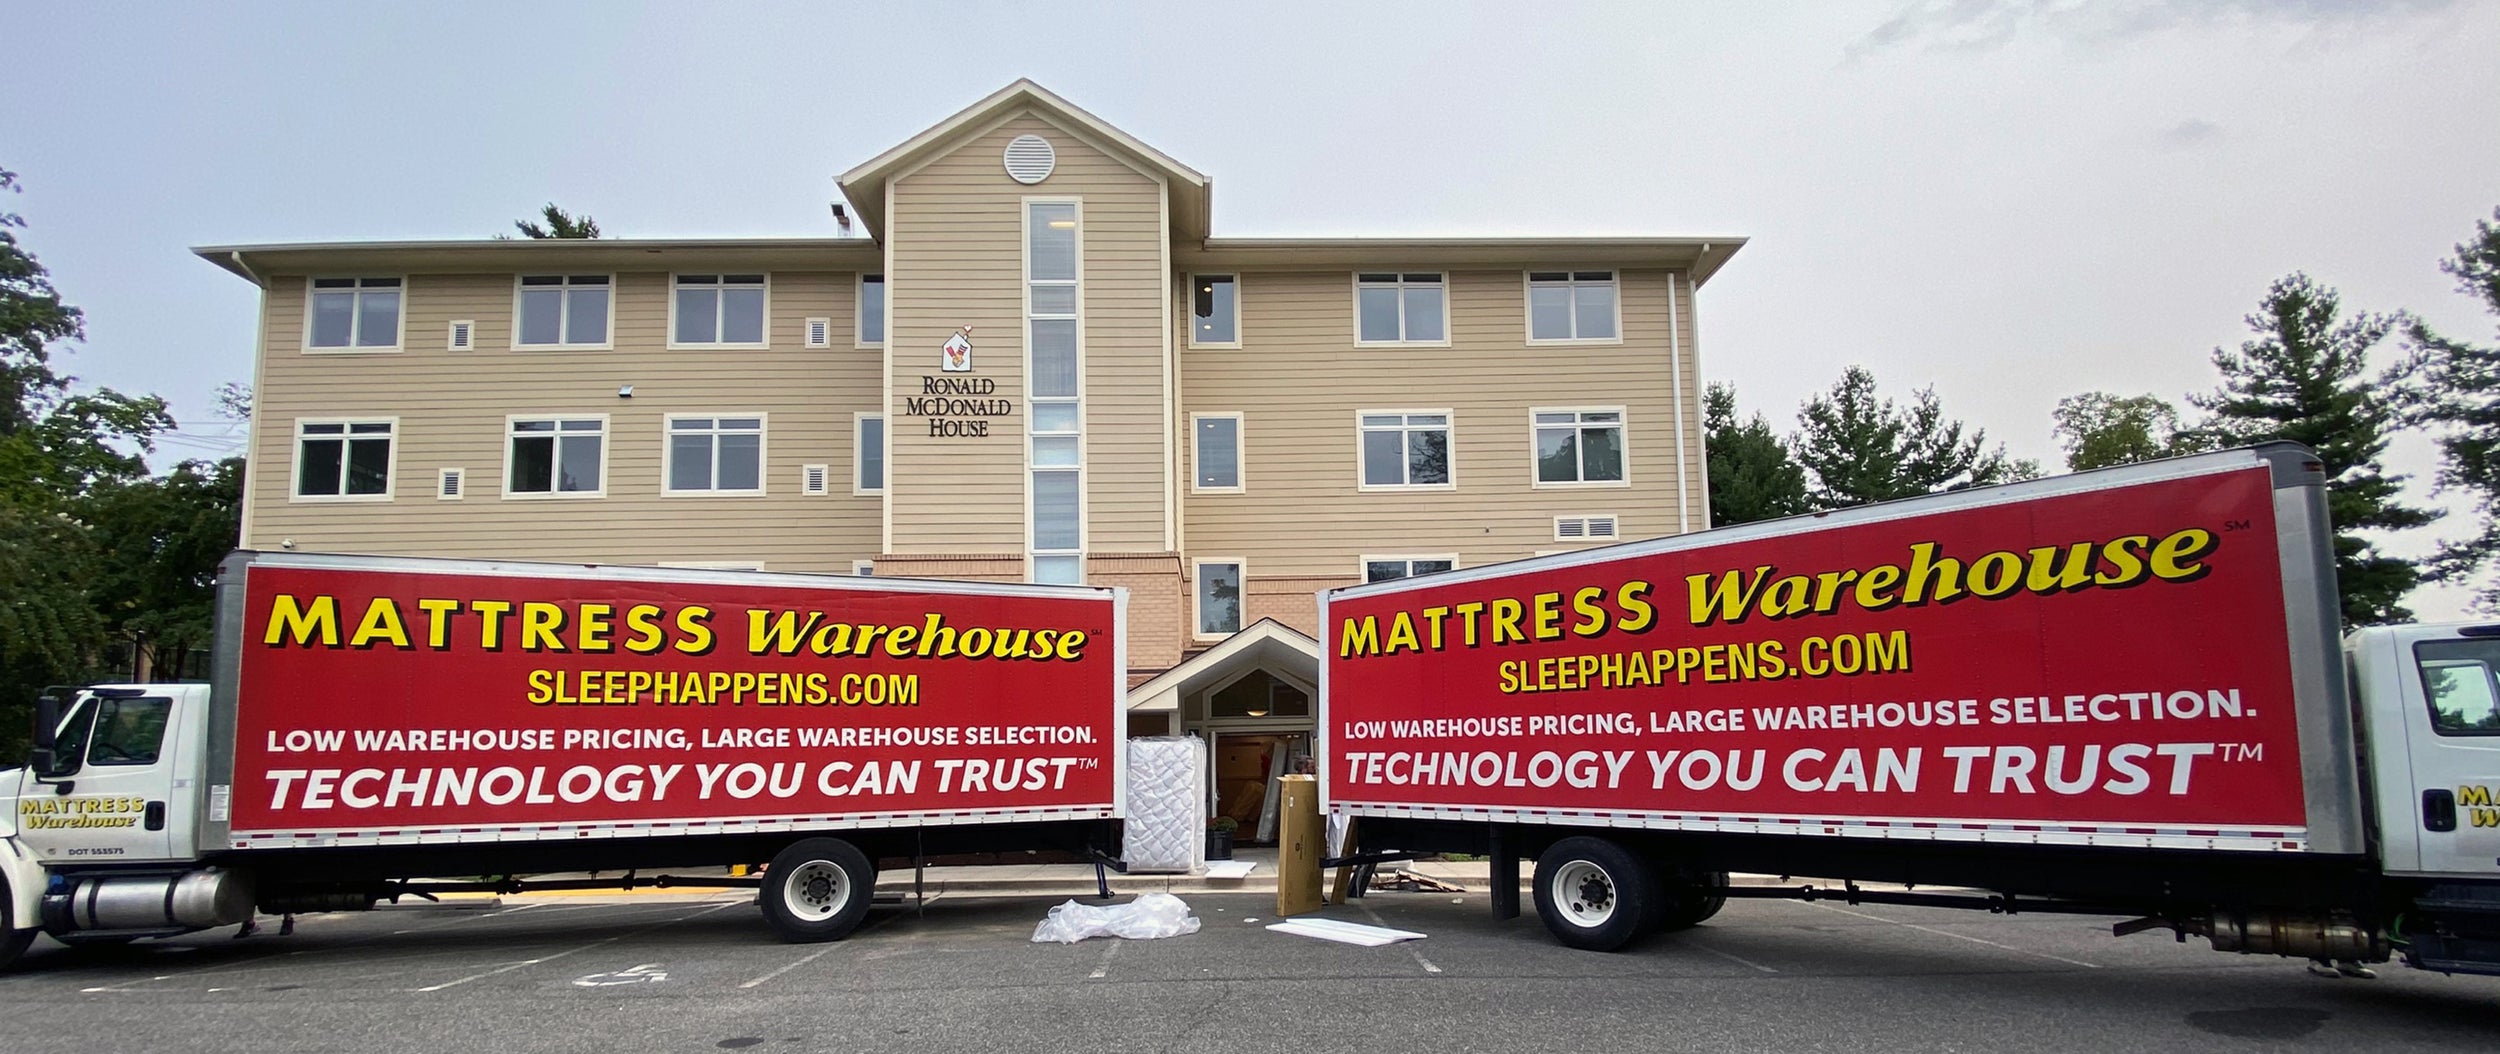 mattress warehouse bed test